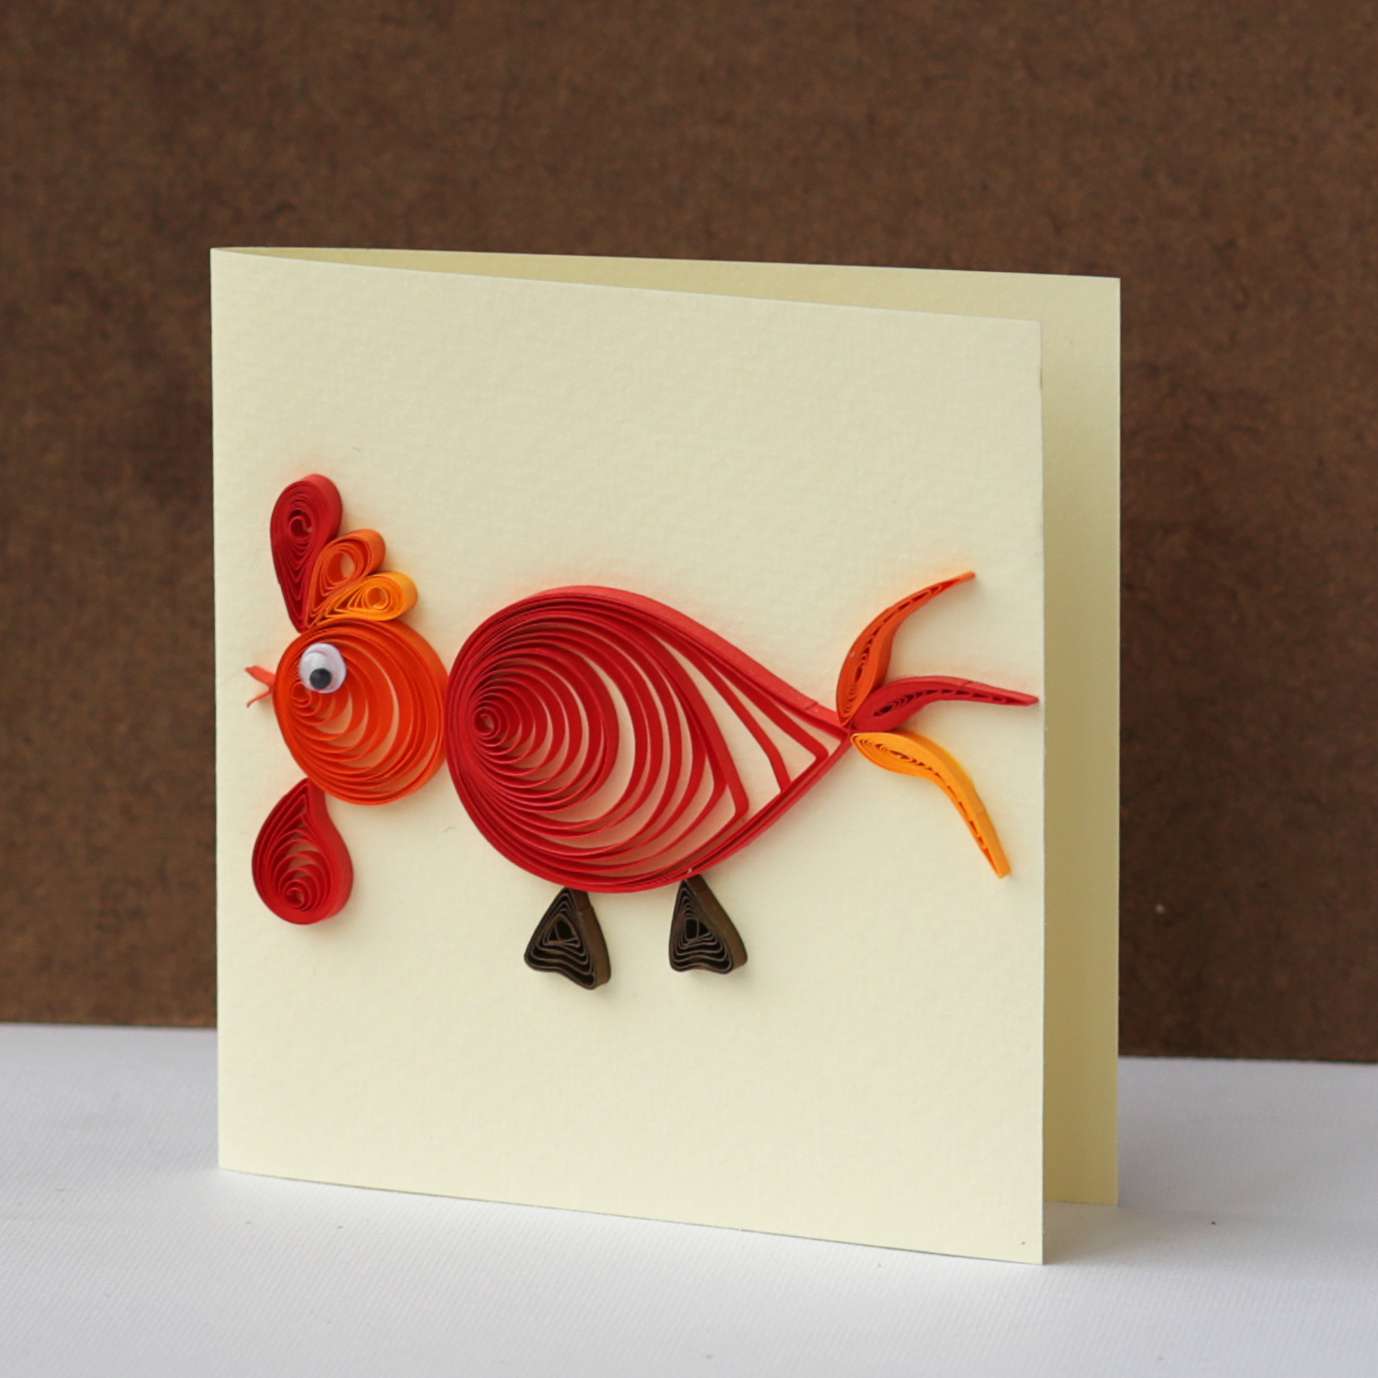 Thiệp handmade cuộn giấy với hình chú gà đỏ